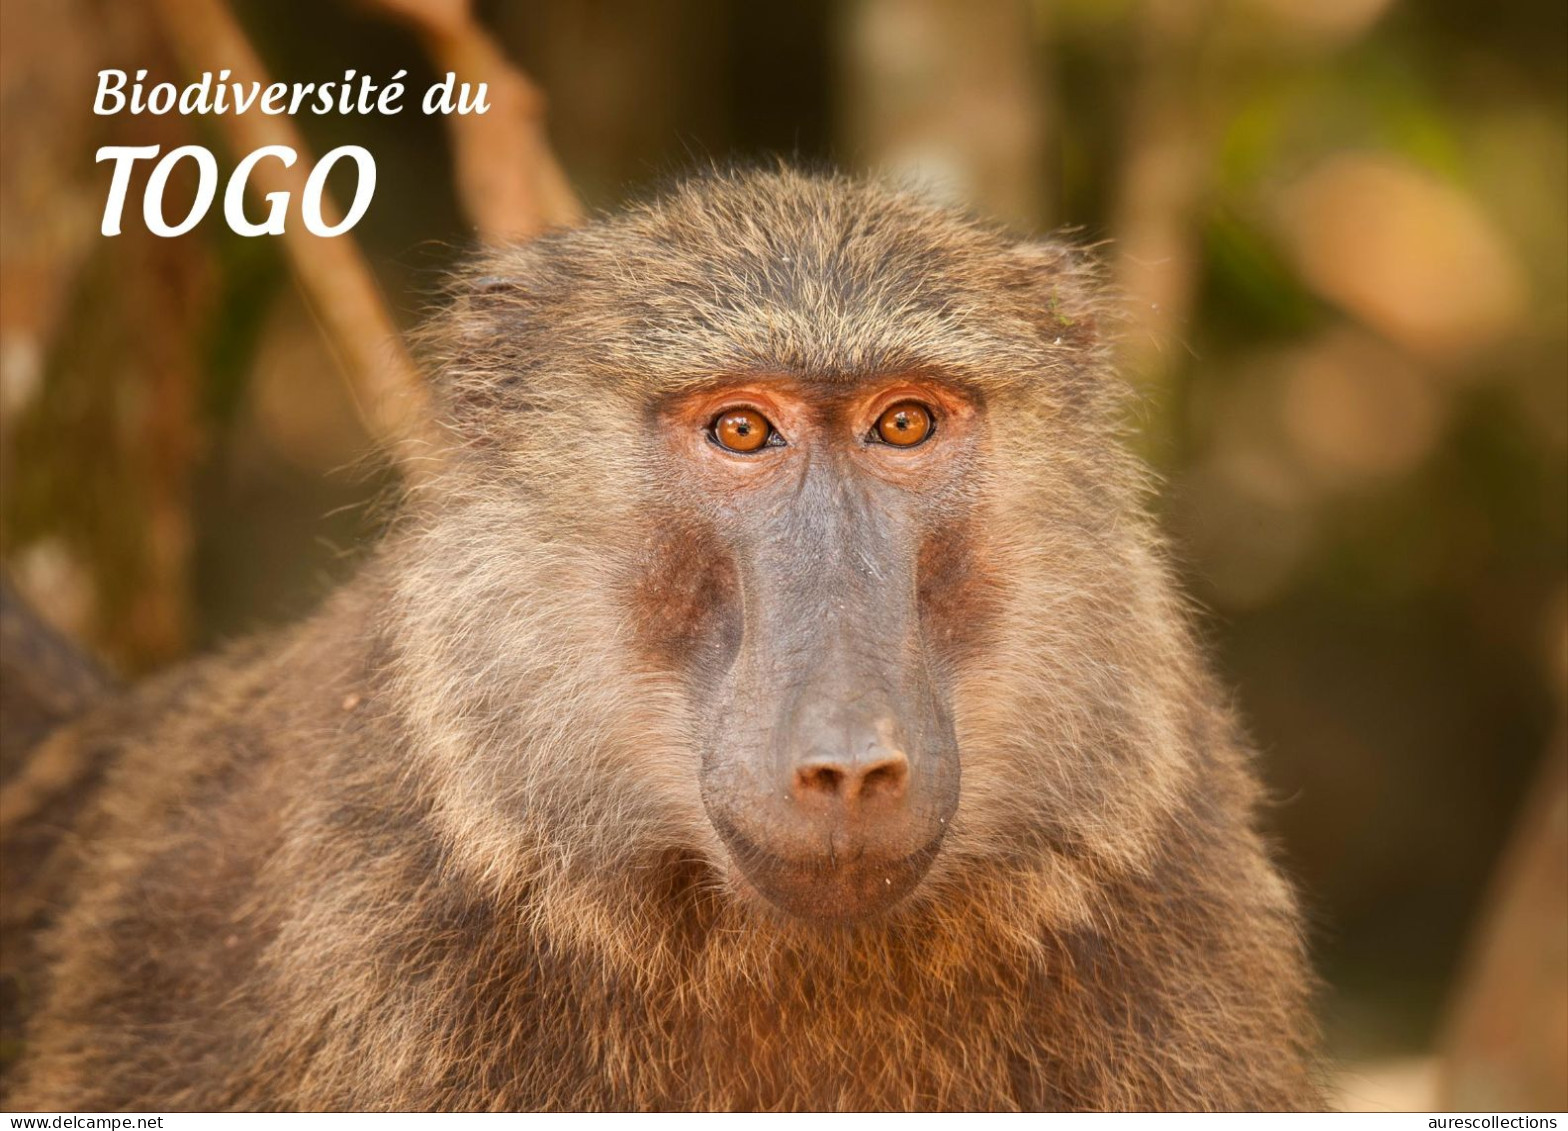 TOGO 2024 STATIONERY CARD - REGULAR - MONKEY MONKEYS APES APE BABOON SINGES - BIODIVERSITY BIODIVERSITE - Monkeys